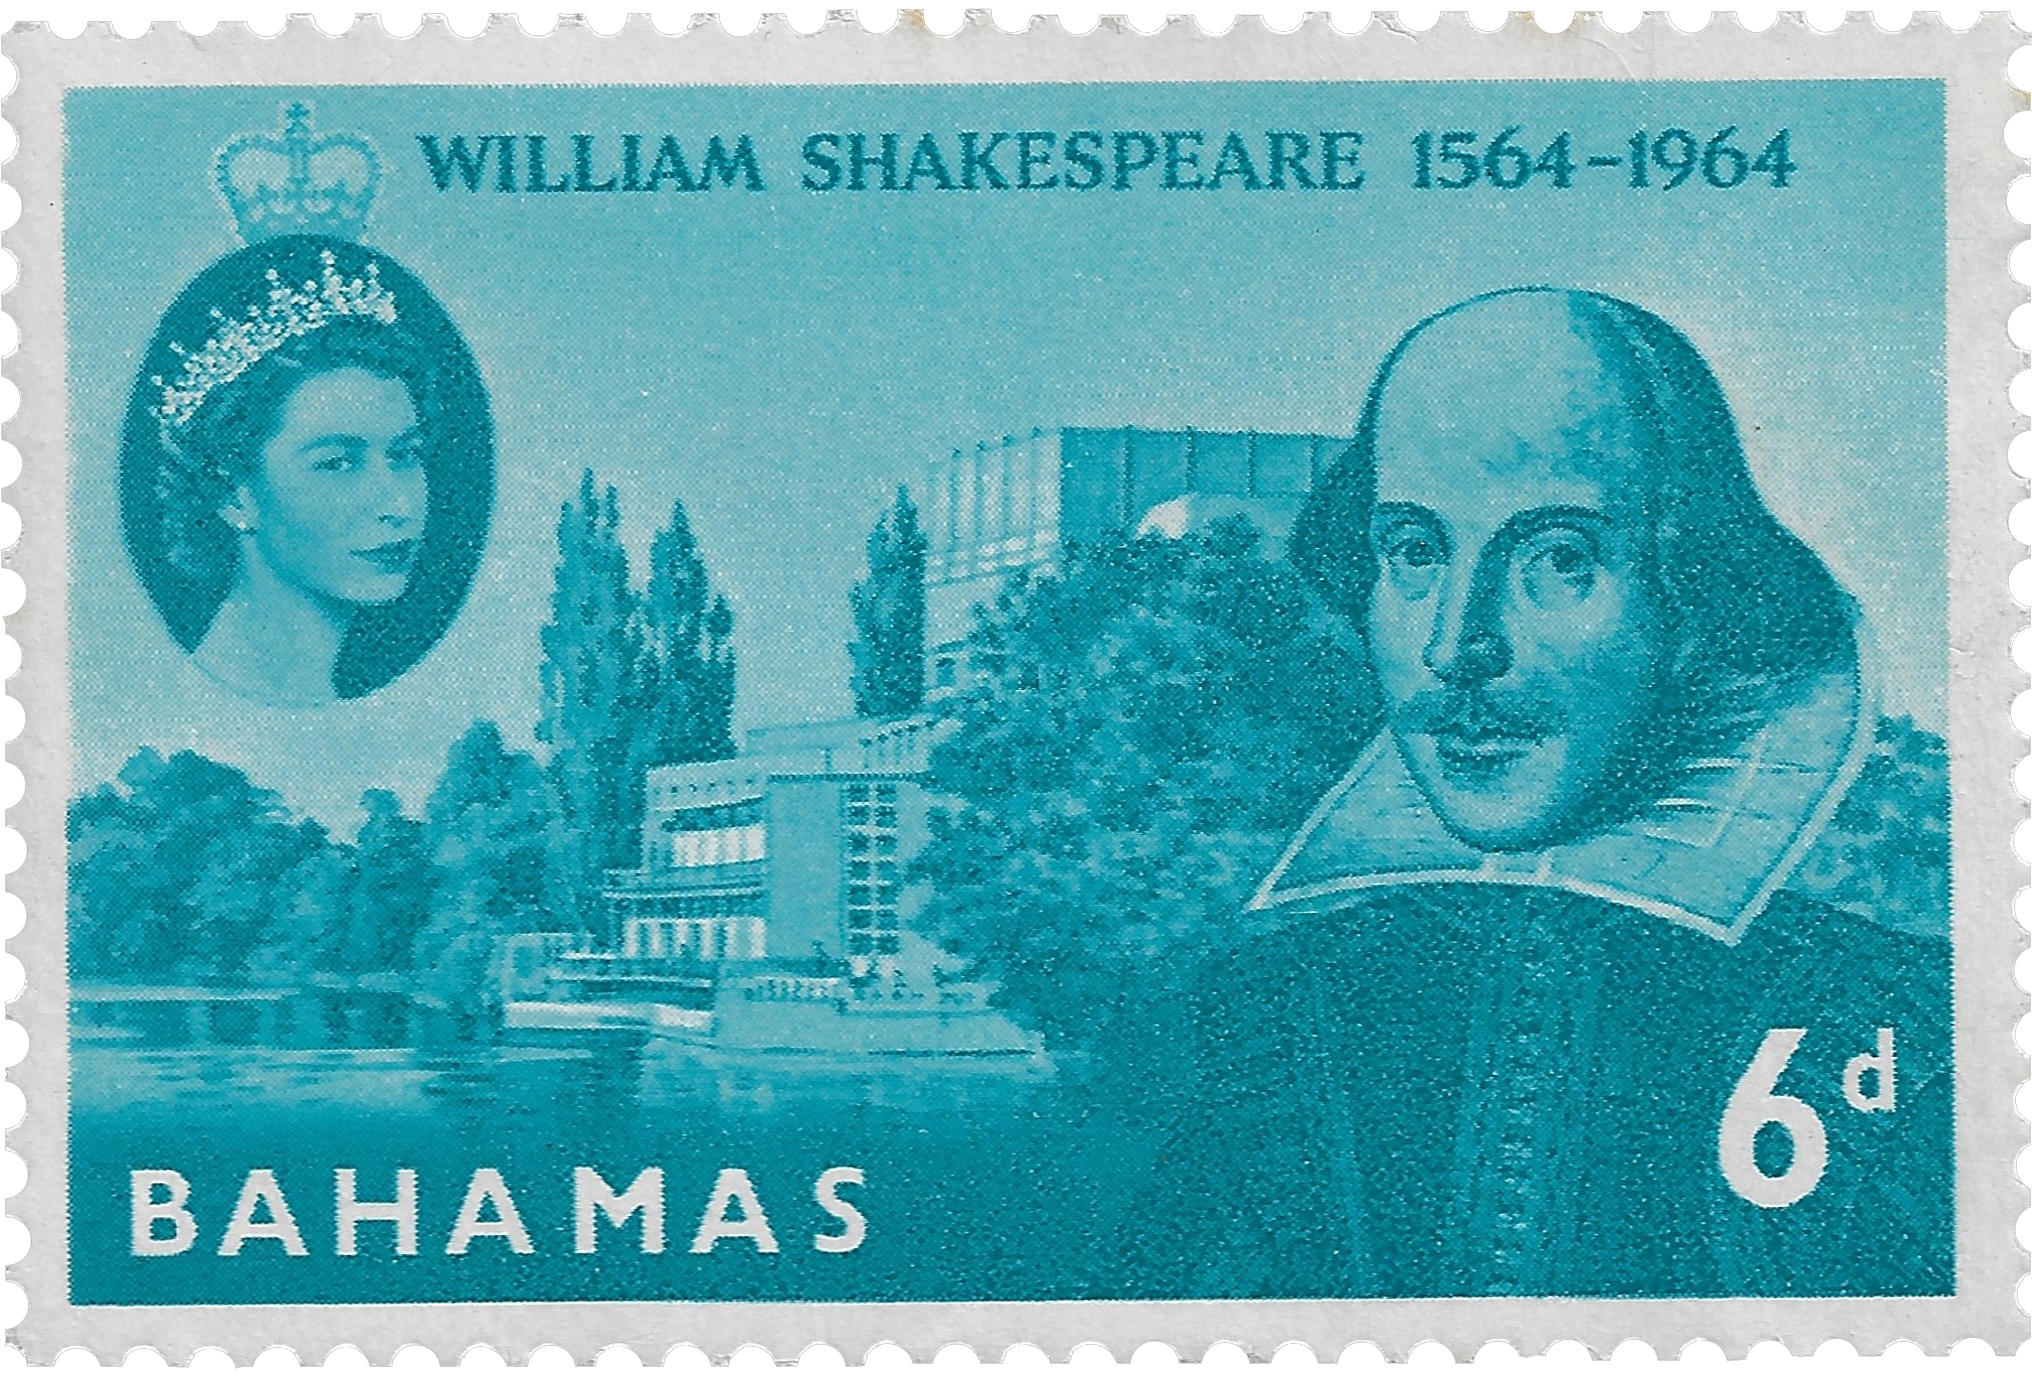 6d 1963, William Shakespeare 1564-1964